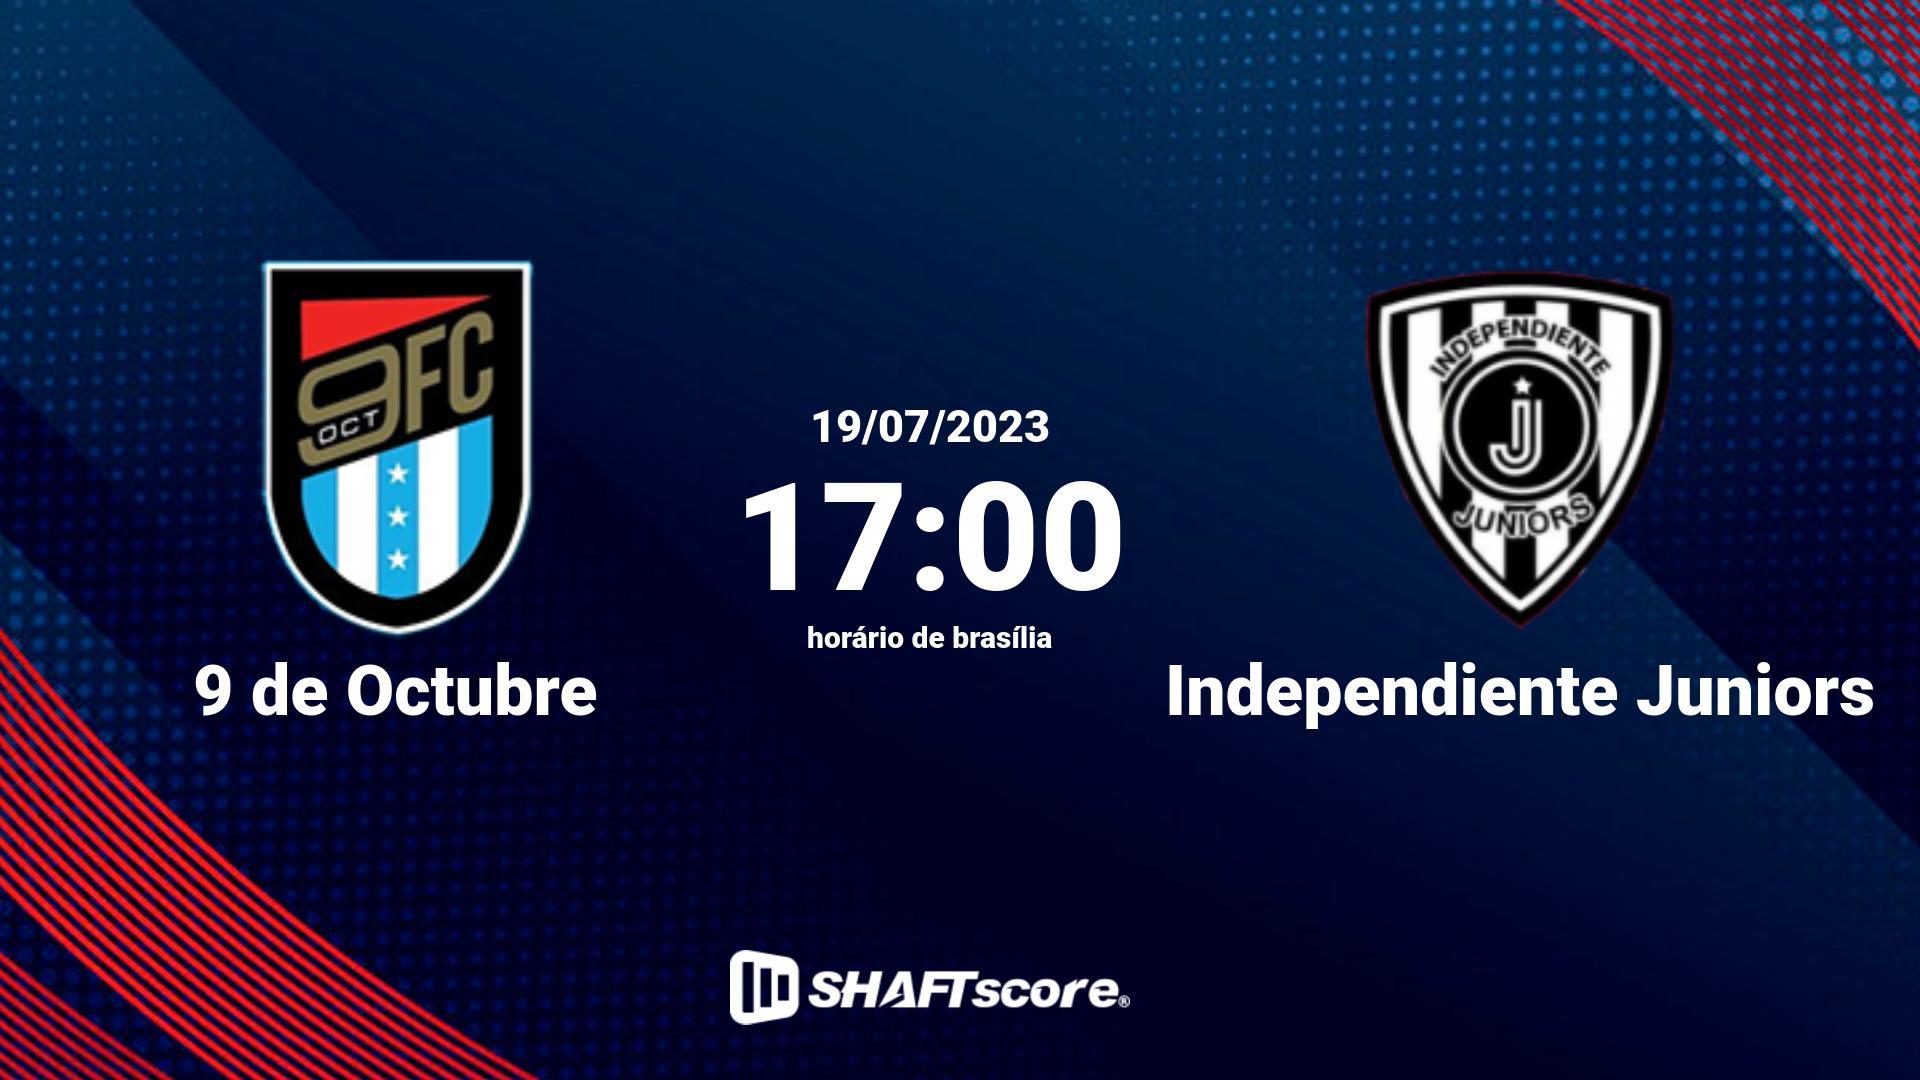 Estatísticas do jogo 9 de Octubre vs Independiente Juniors 19.07 17:00